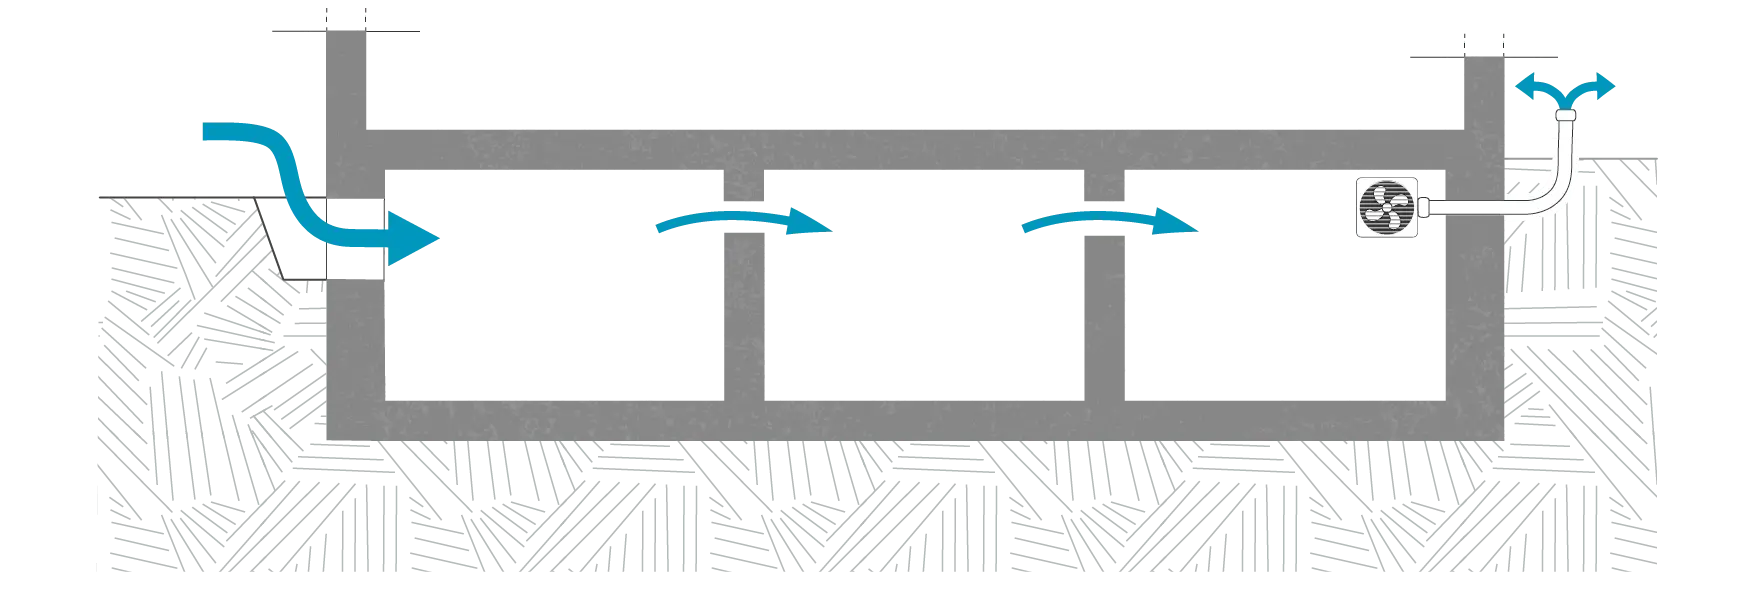 Schéma d'une ventilation mécanique d'une cave